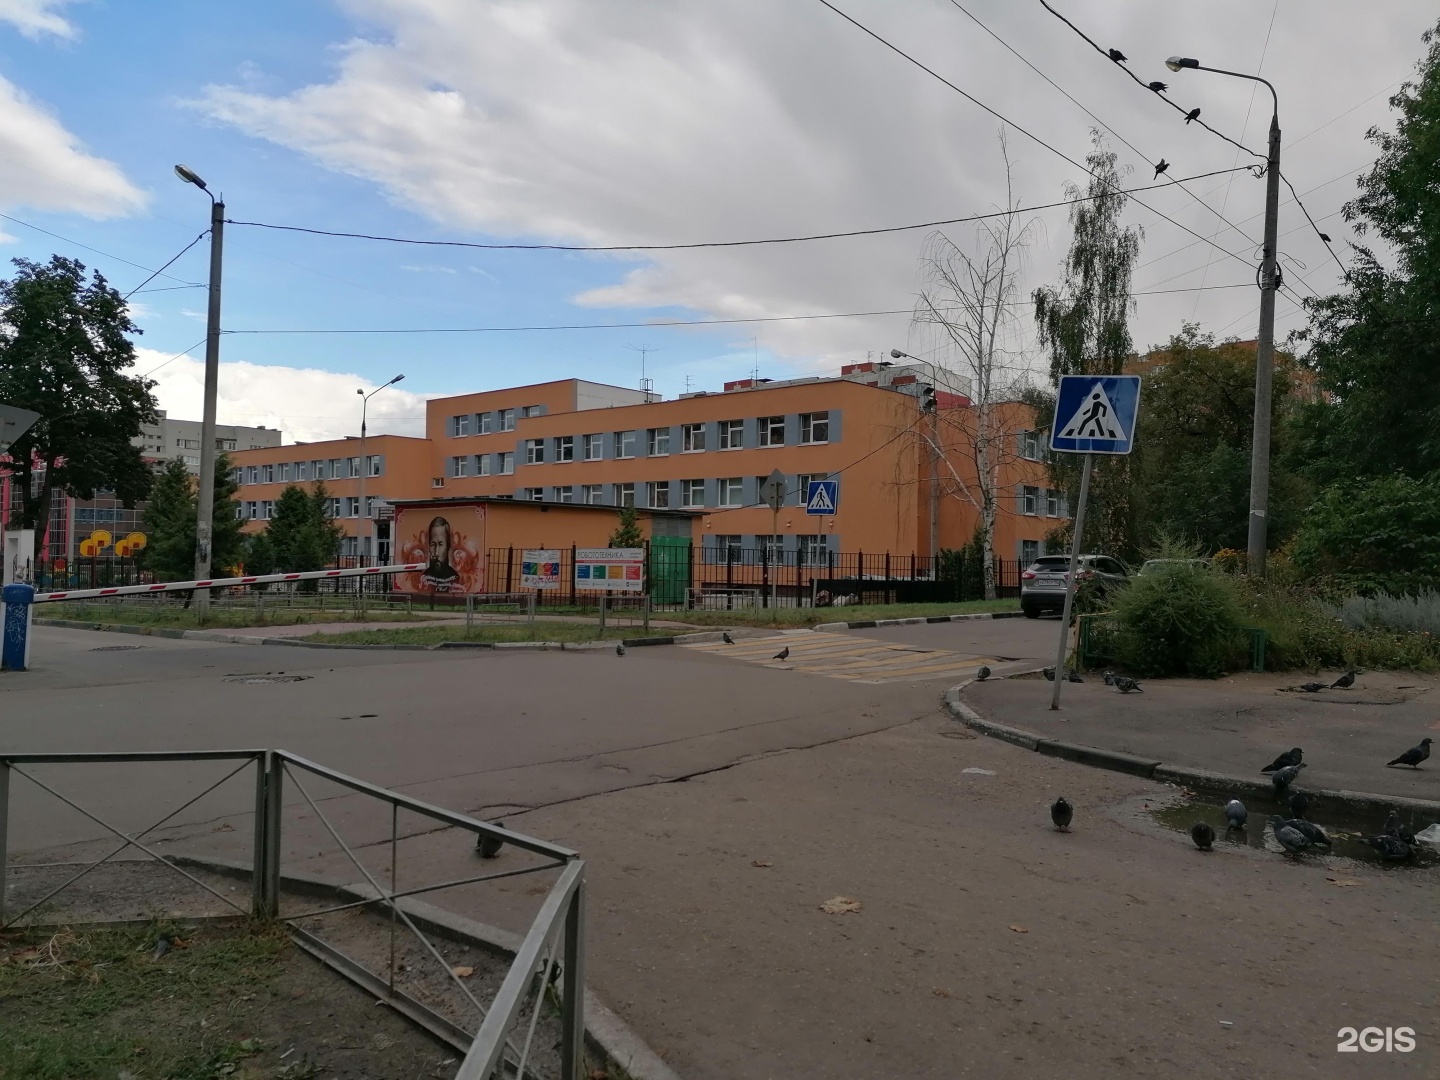 Школы нижнего новгорода вк